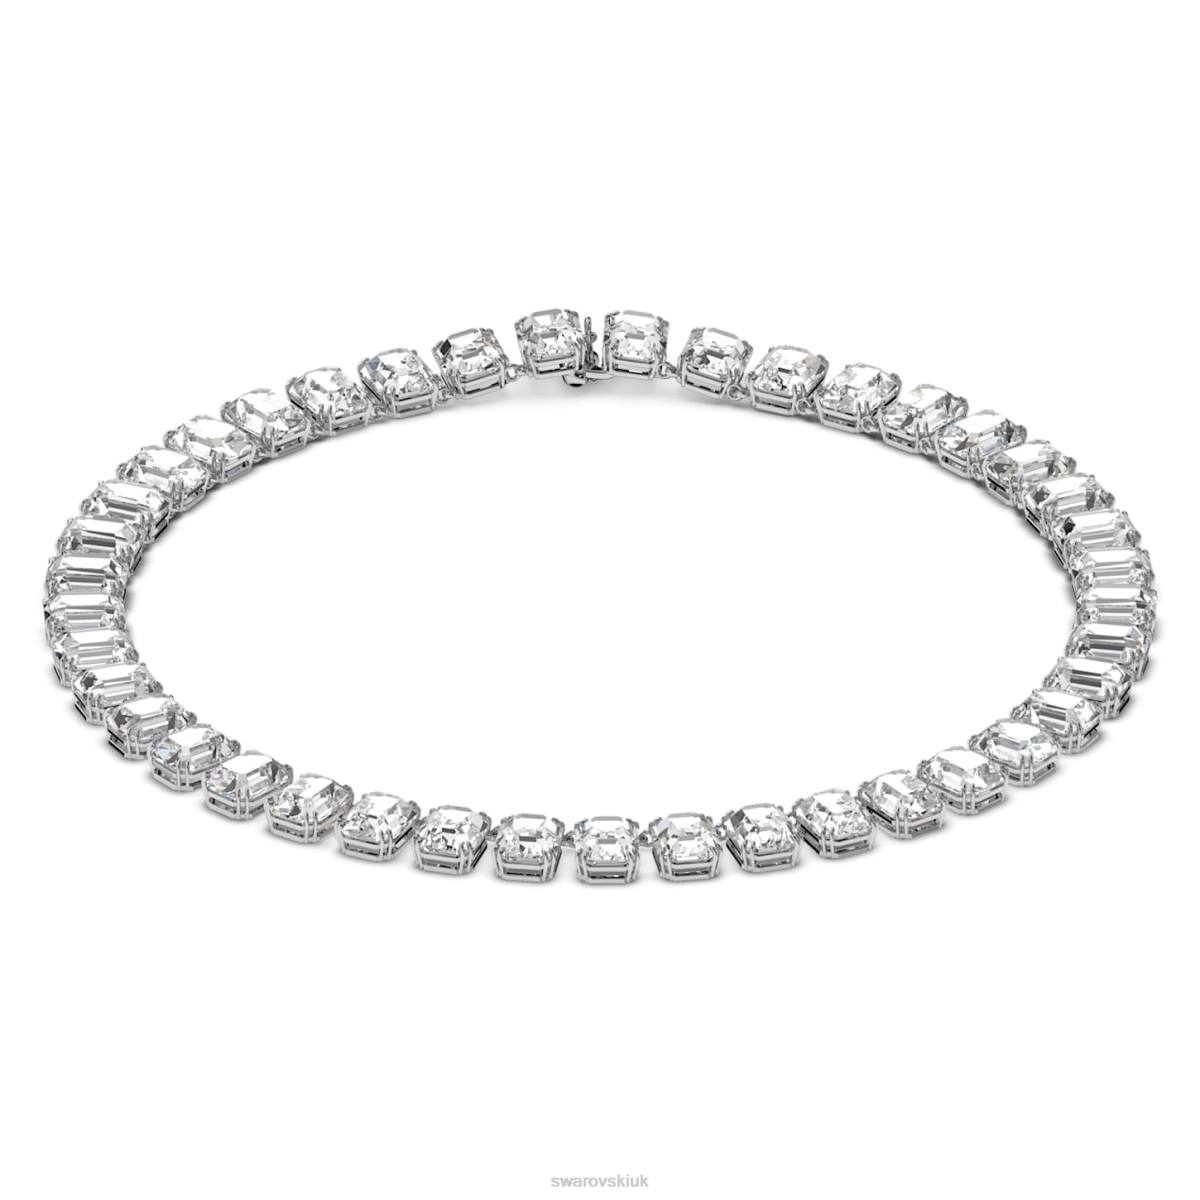 Jewelry Swarovski Millenia necklace Octagon cut White, Rhodium plated 48JX52